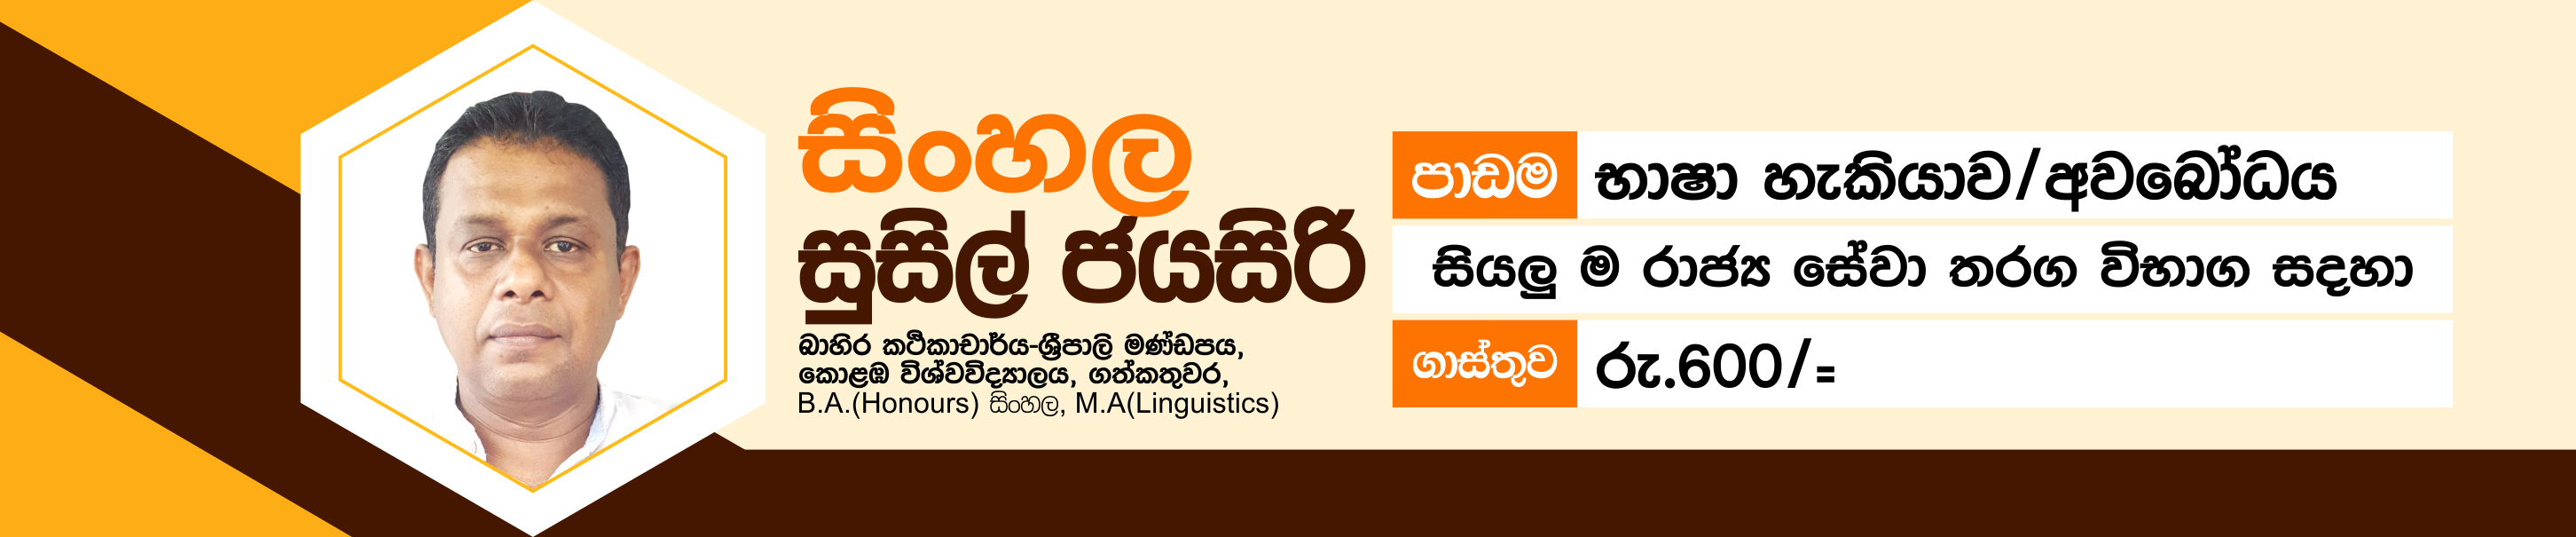 Sinhala Language - For all State Service Competitive Exam Candidates | සිංහල - භාෂා හැකියාව / අවබෝධය සියලු ම රාජ්&zwj;ය සේවා තරග විභාග සදහා